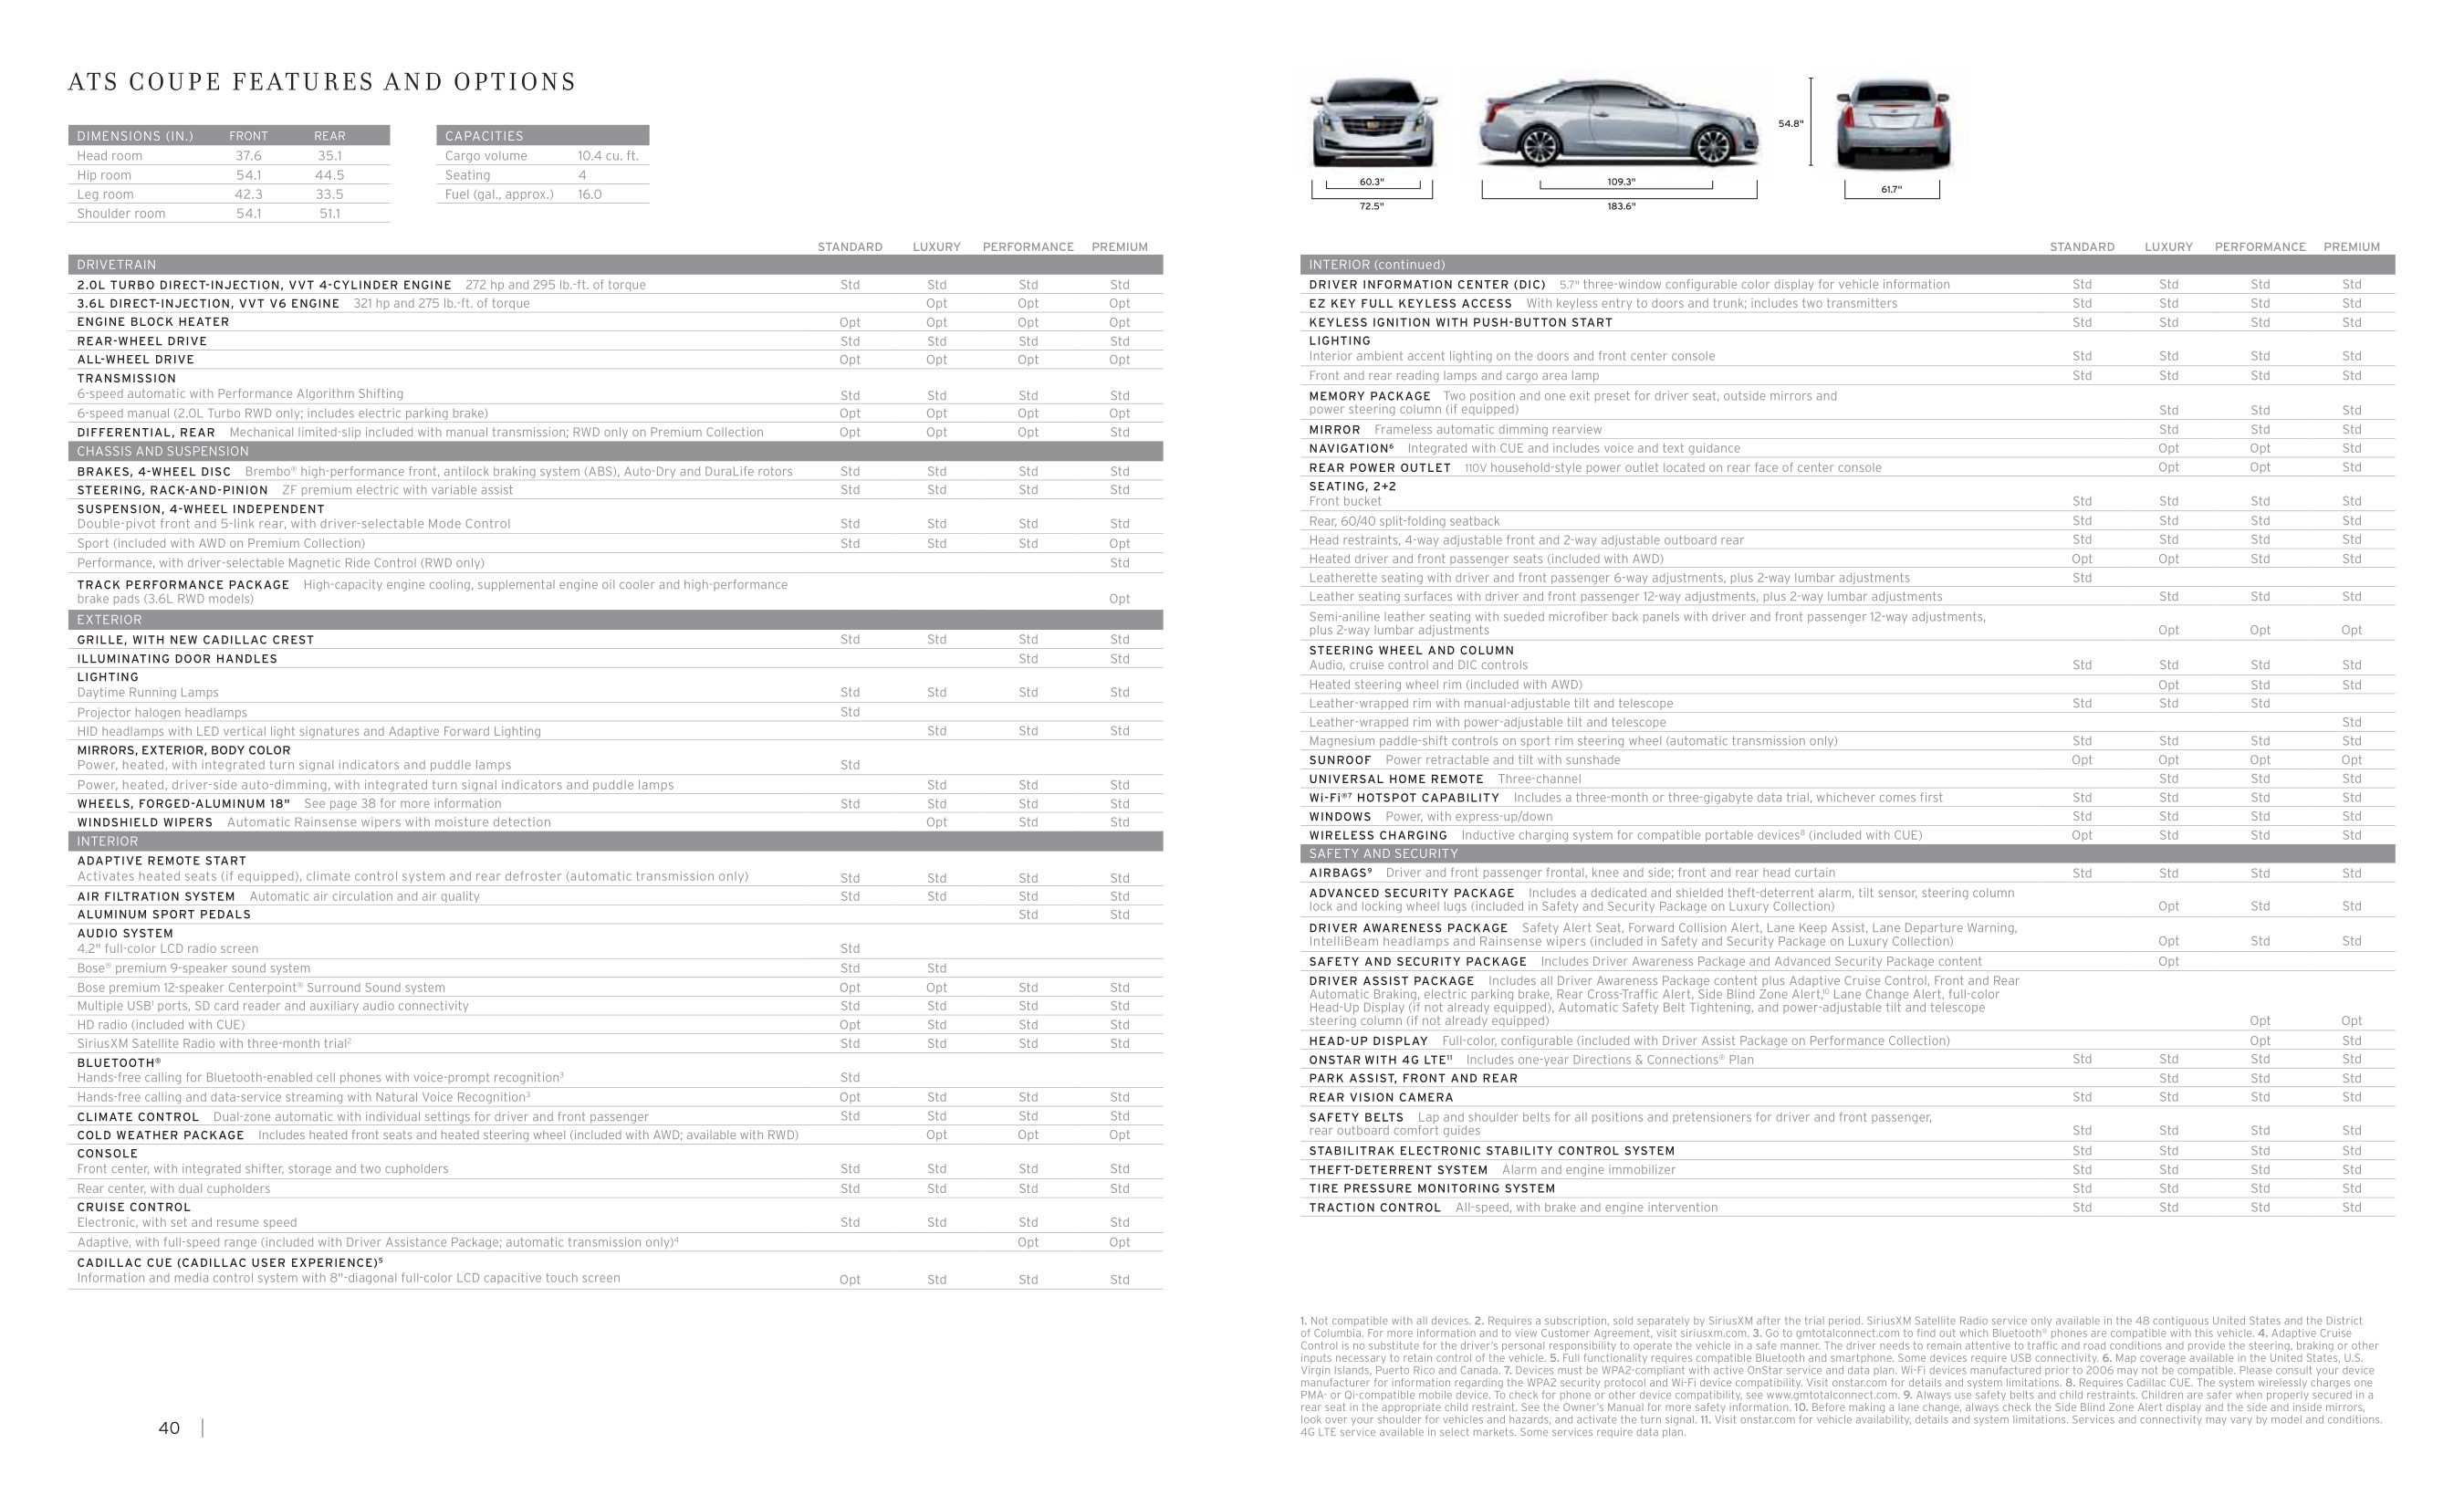 2015 Cadillac ATS Brochure Page 2